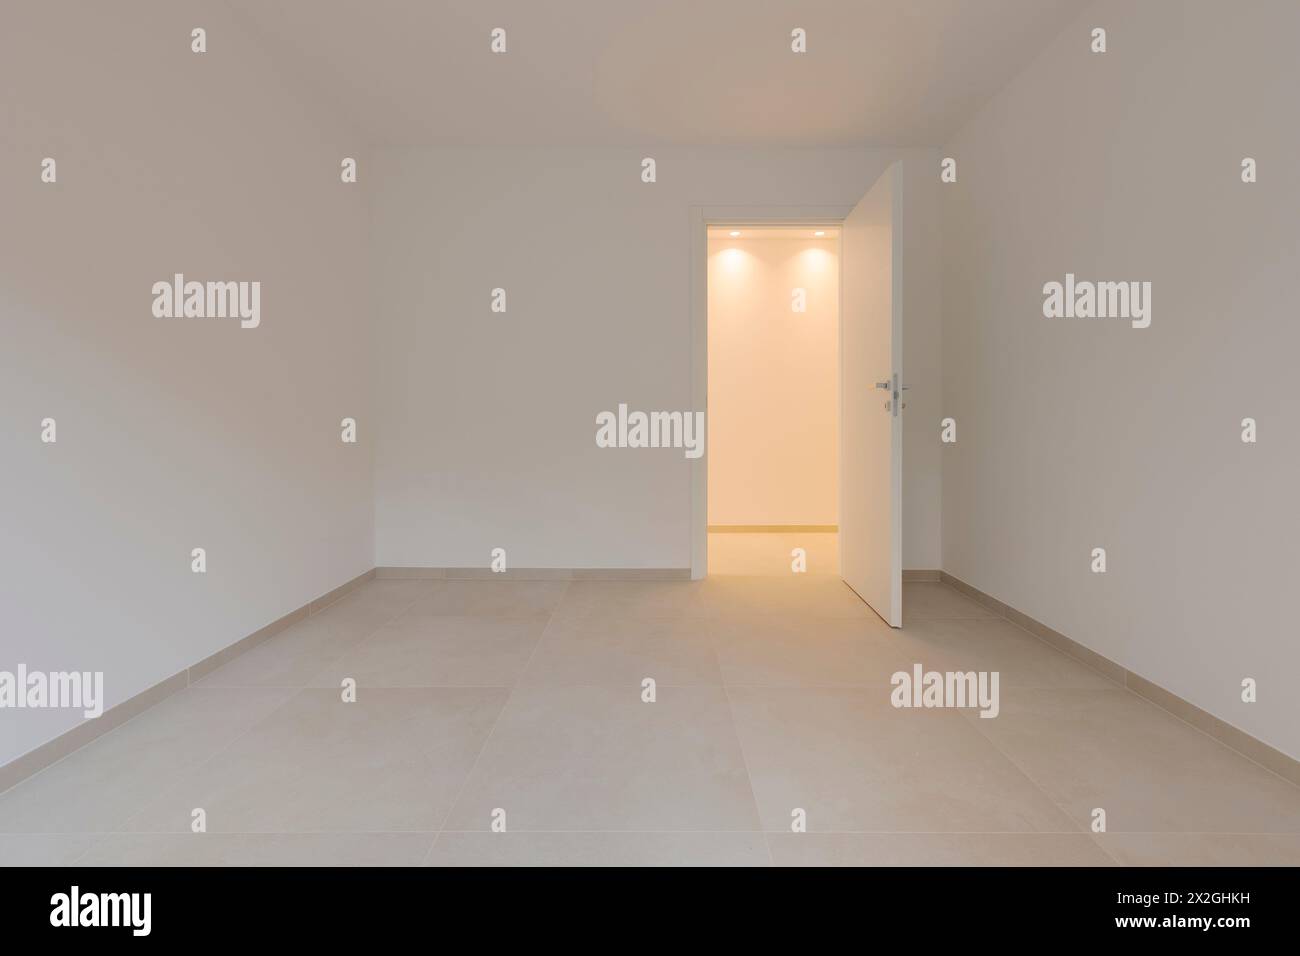 In einem leeren Raum und rechts eine Tür, die zum Flur führt, mit einem Licht an. Alle Wände und Decken sind weiß. Stockfoto